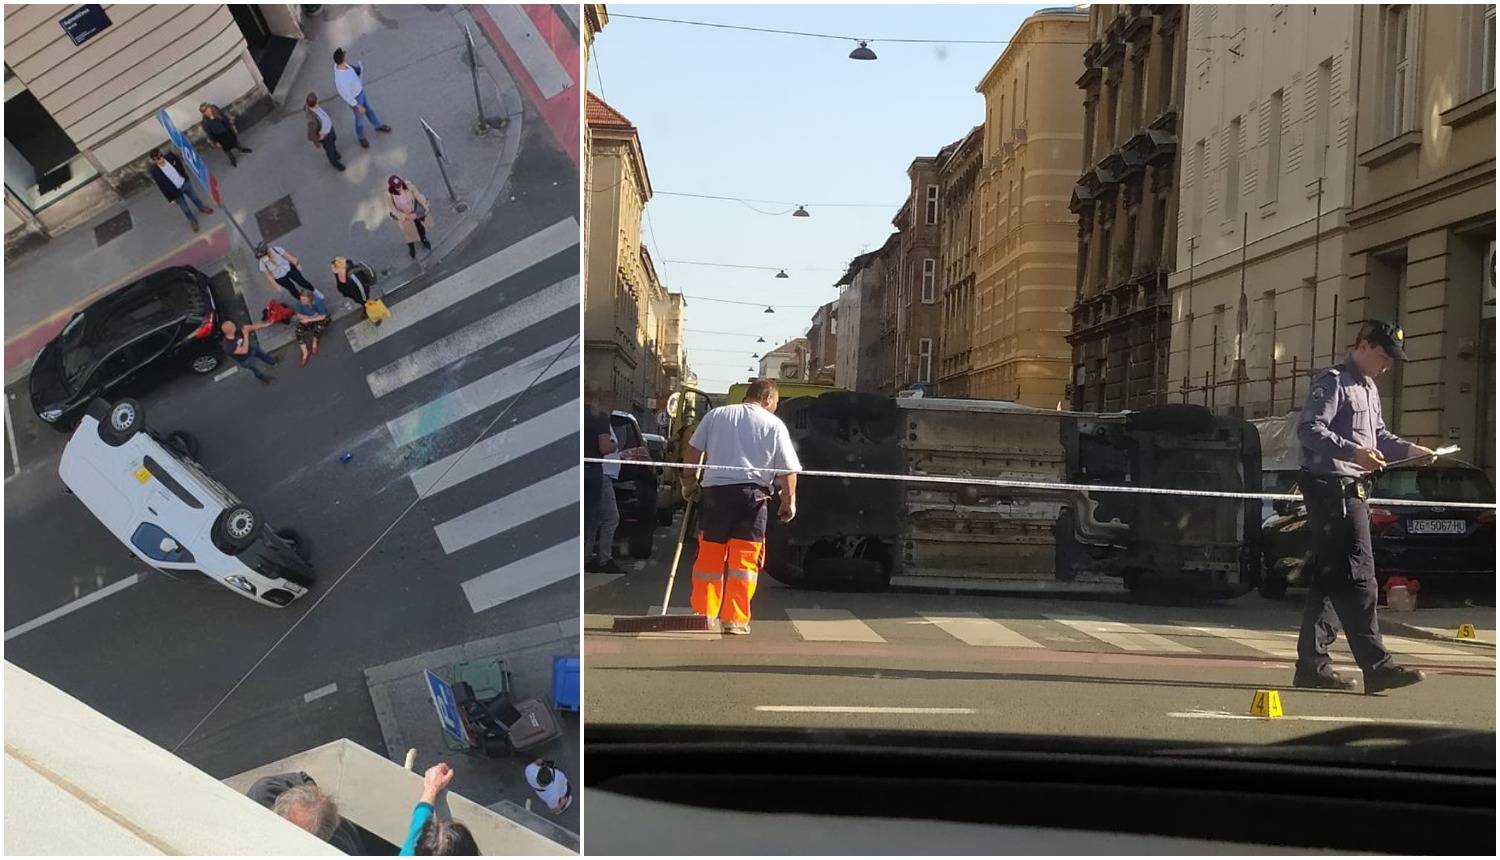 Sudar usred špice: Auto završio na boku u centru Zagreba, u bolnicu prevezli ozlijeđenu ženu